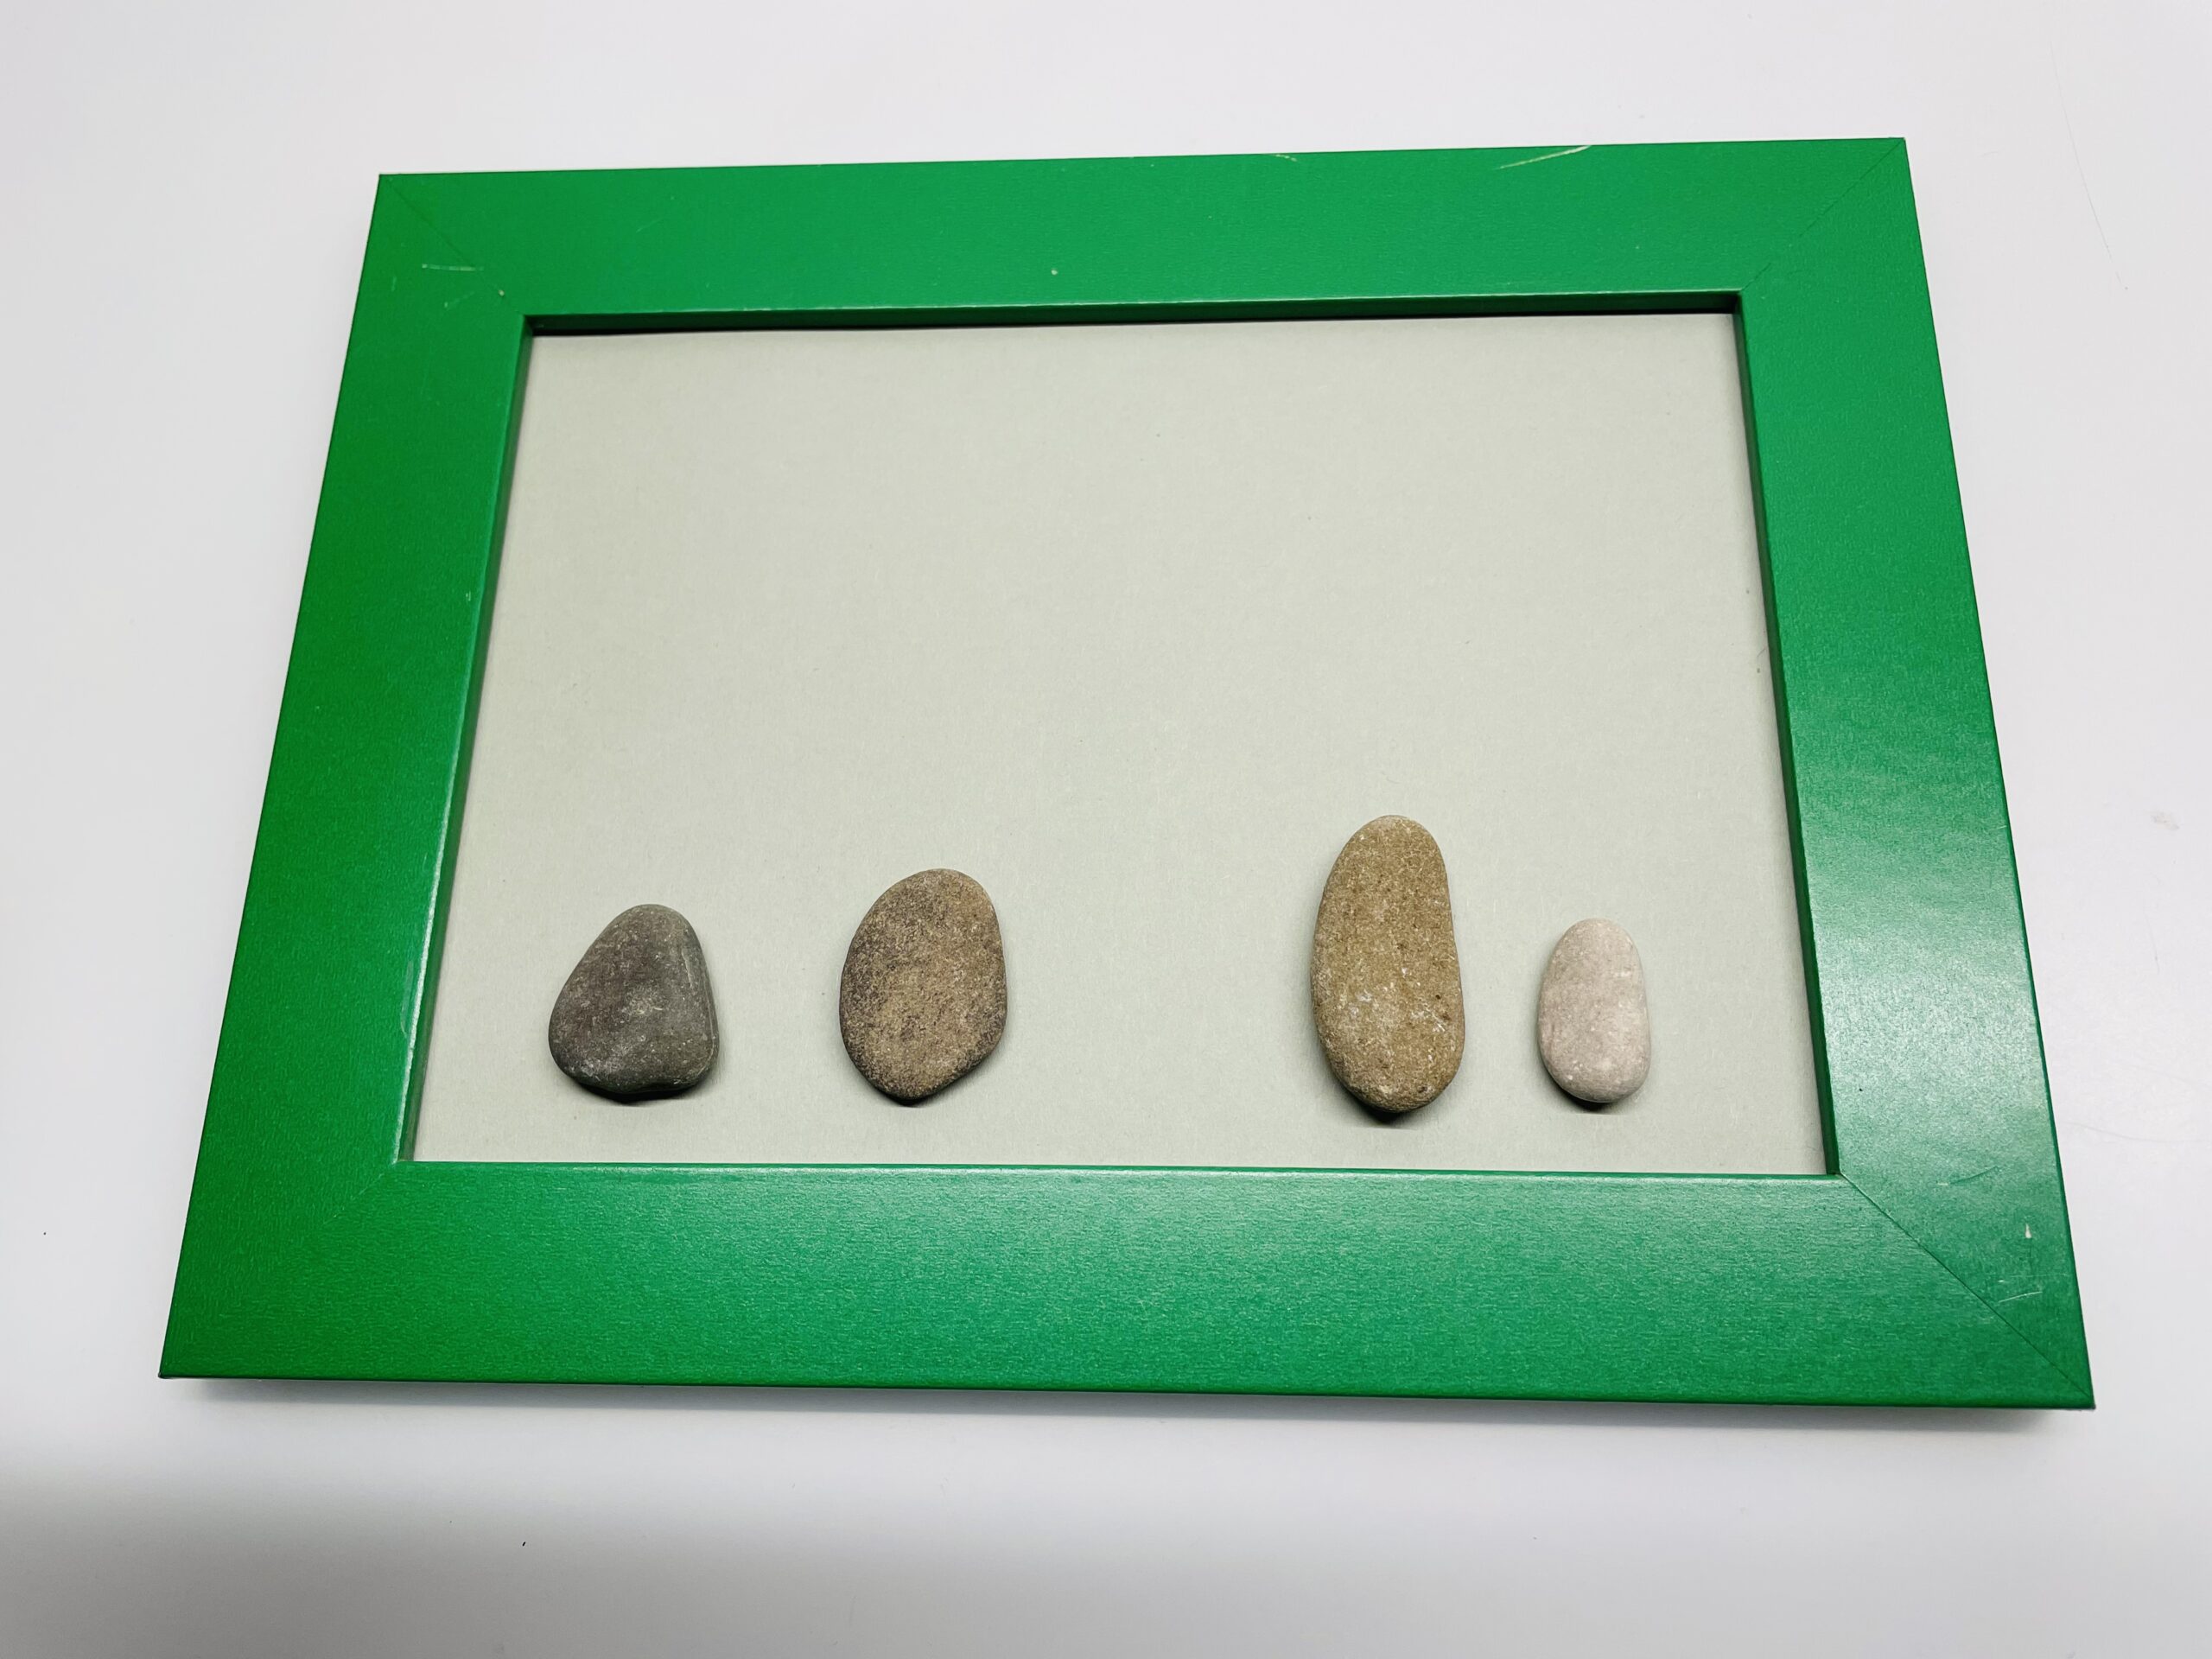 Bild zum Schritt 2 für das Bastel- und DIY-Abenteuer für Kinder: 'Anschließend legt ihr 4 längliche abgerundete Steine auf den Rahmen....'